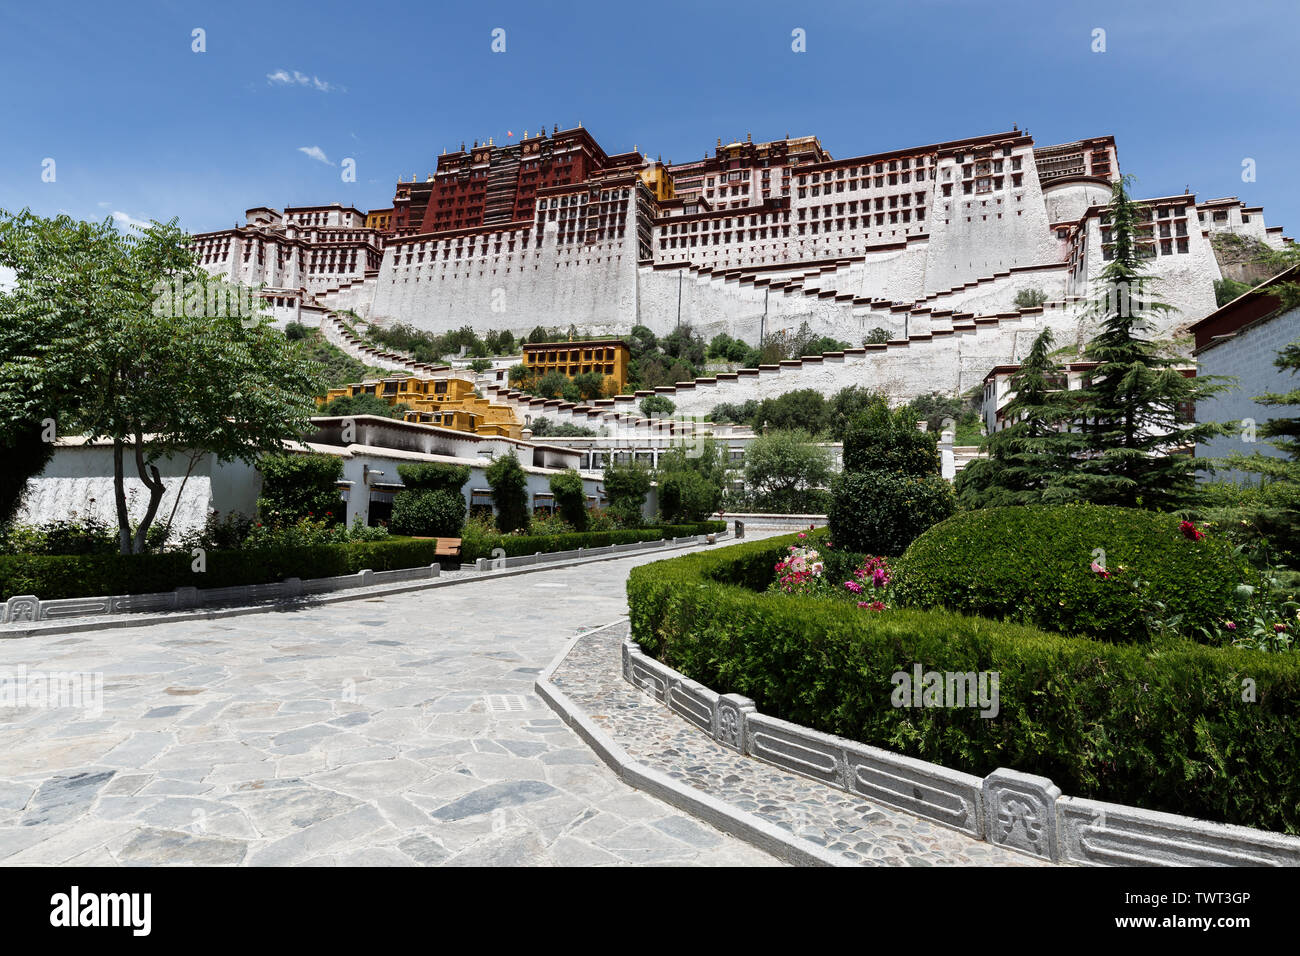 Gepflasterte Weg zum Potala Palast. Die alte Festung ist ein UNESCO-Weltkulturerbe. Startseite des Dalai Lama und Zentrum des tibetischen Buddhismus. Stockfoto